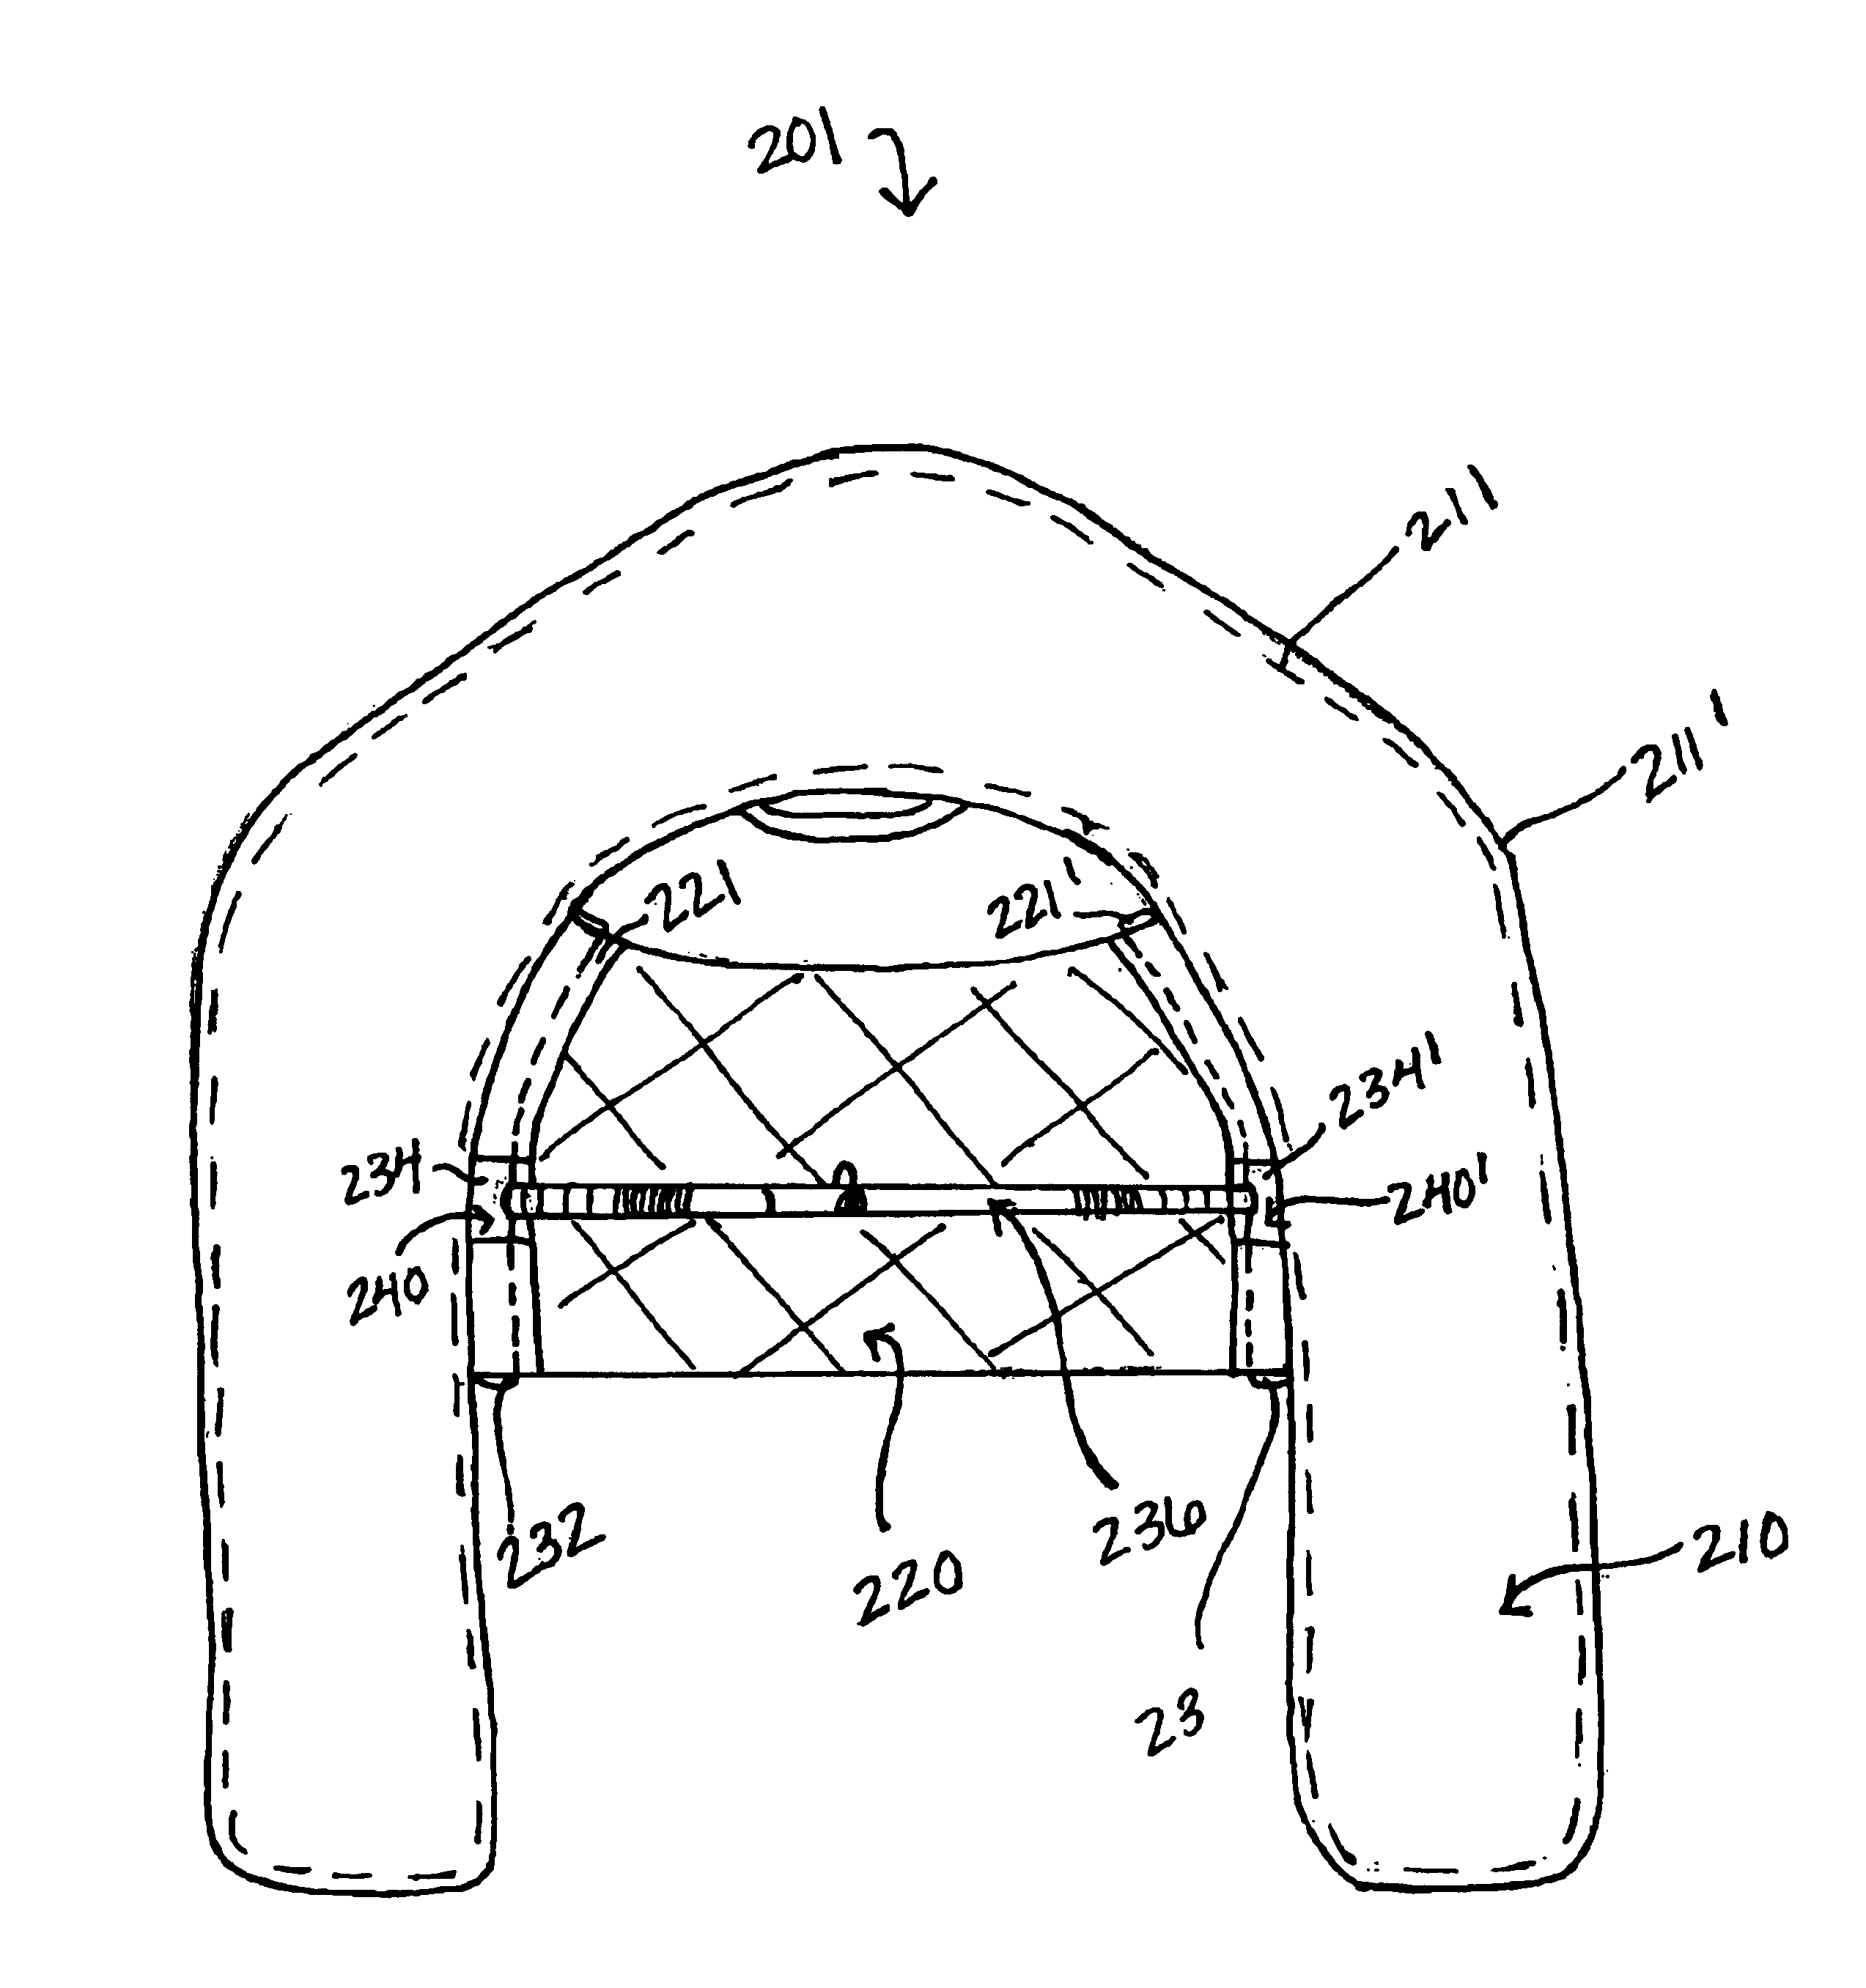 U-shaped float tube with stabilizing frame